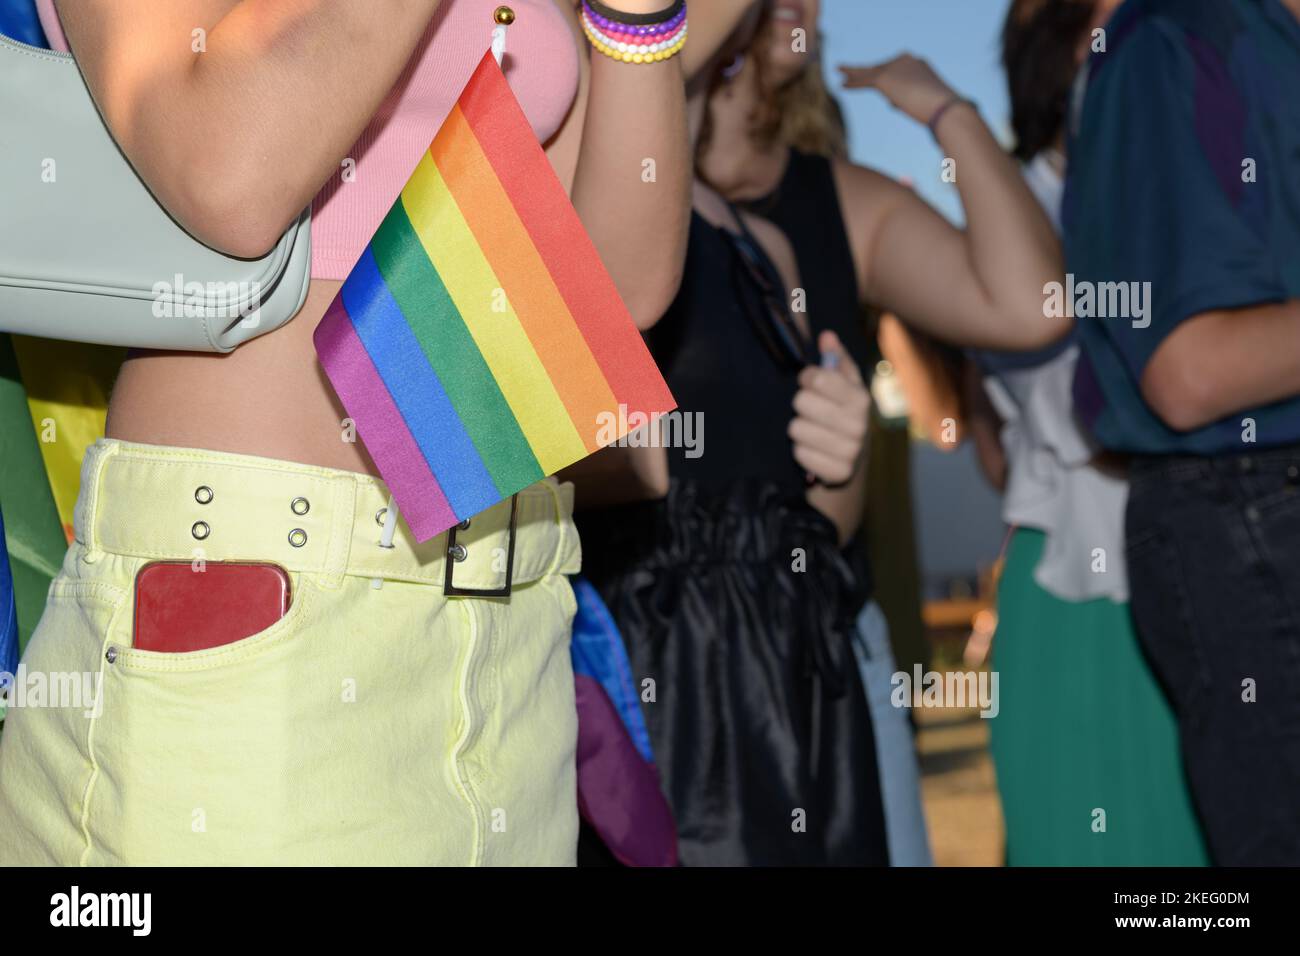 Drapeau arc-en-ciel LGBT dans la poche de la jupe d'une fille pendant la fierté gay, gros plan, foyer sélectif Banque D'Images